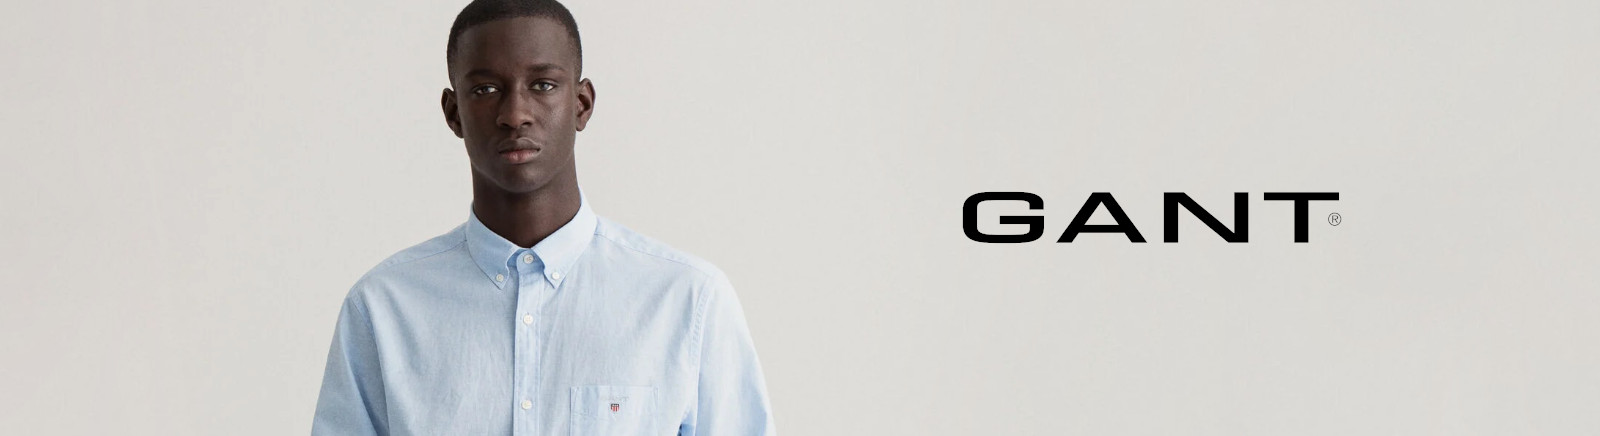 Prange: Gant Schnürrschuhe für Herren online shoppen